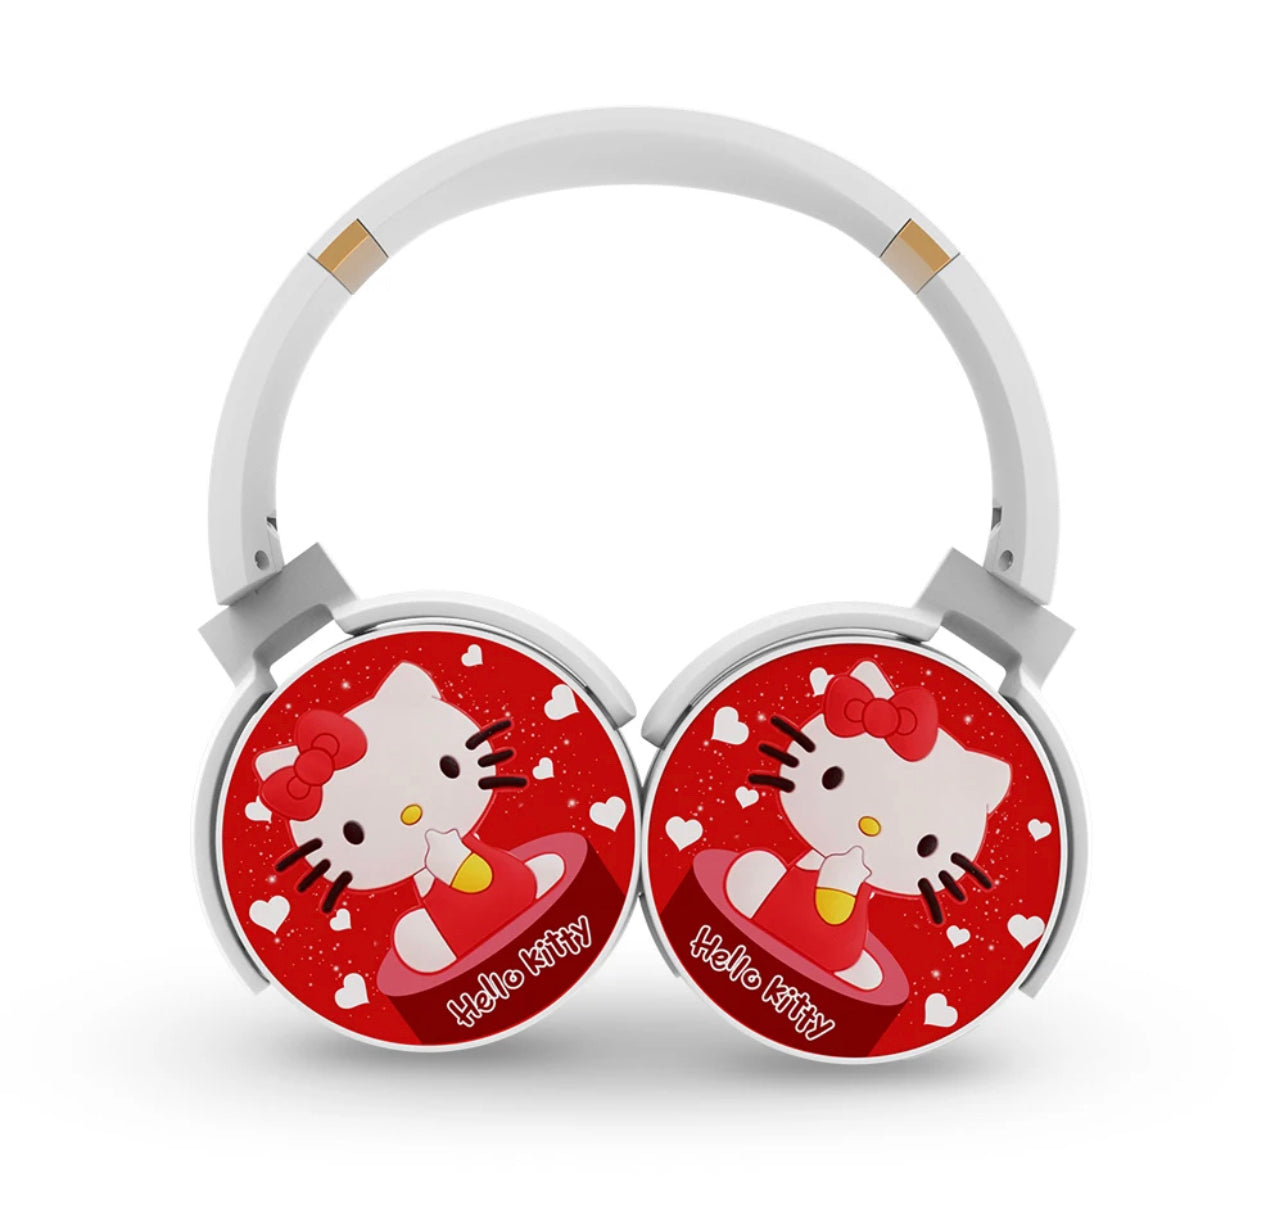 Hello Kitty Wireless Headphones